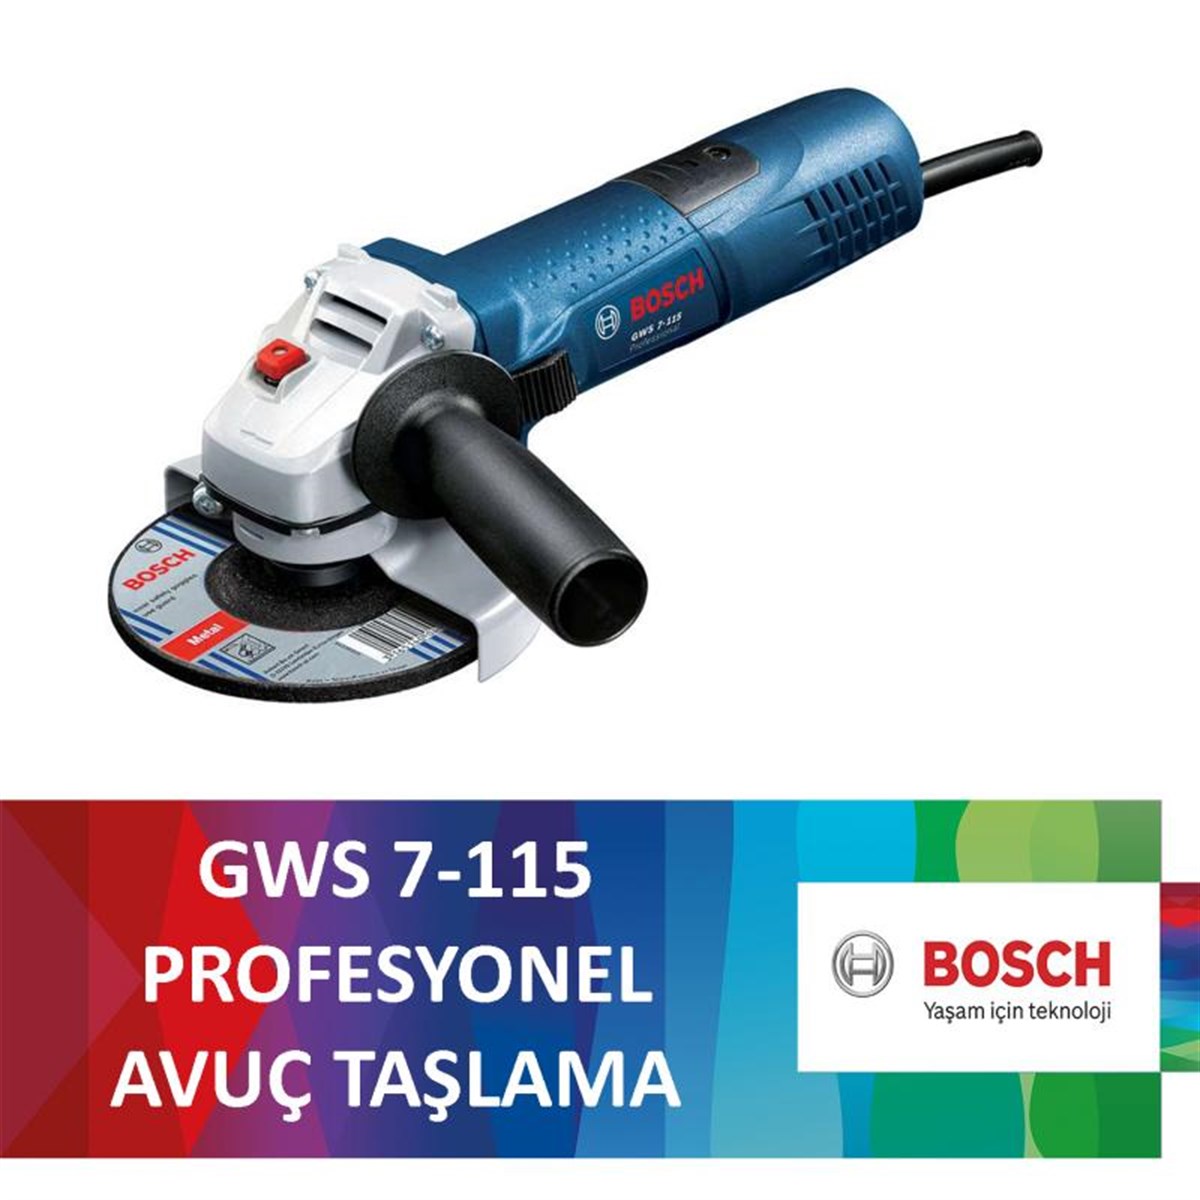 Bosch GWS 7-115 Avuç Taşlama